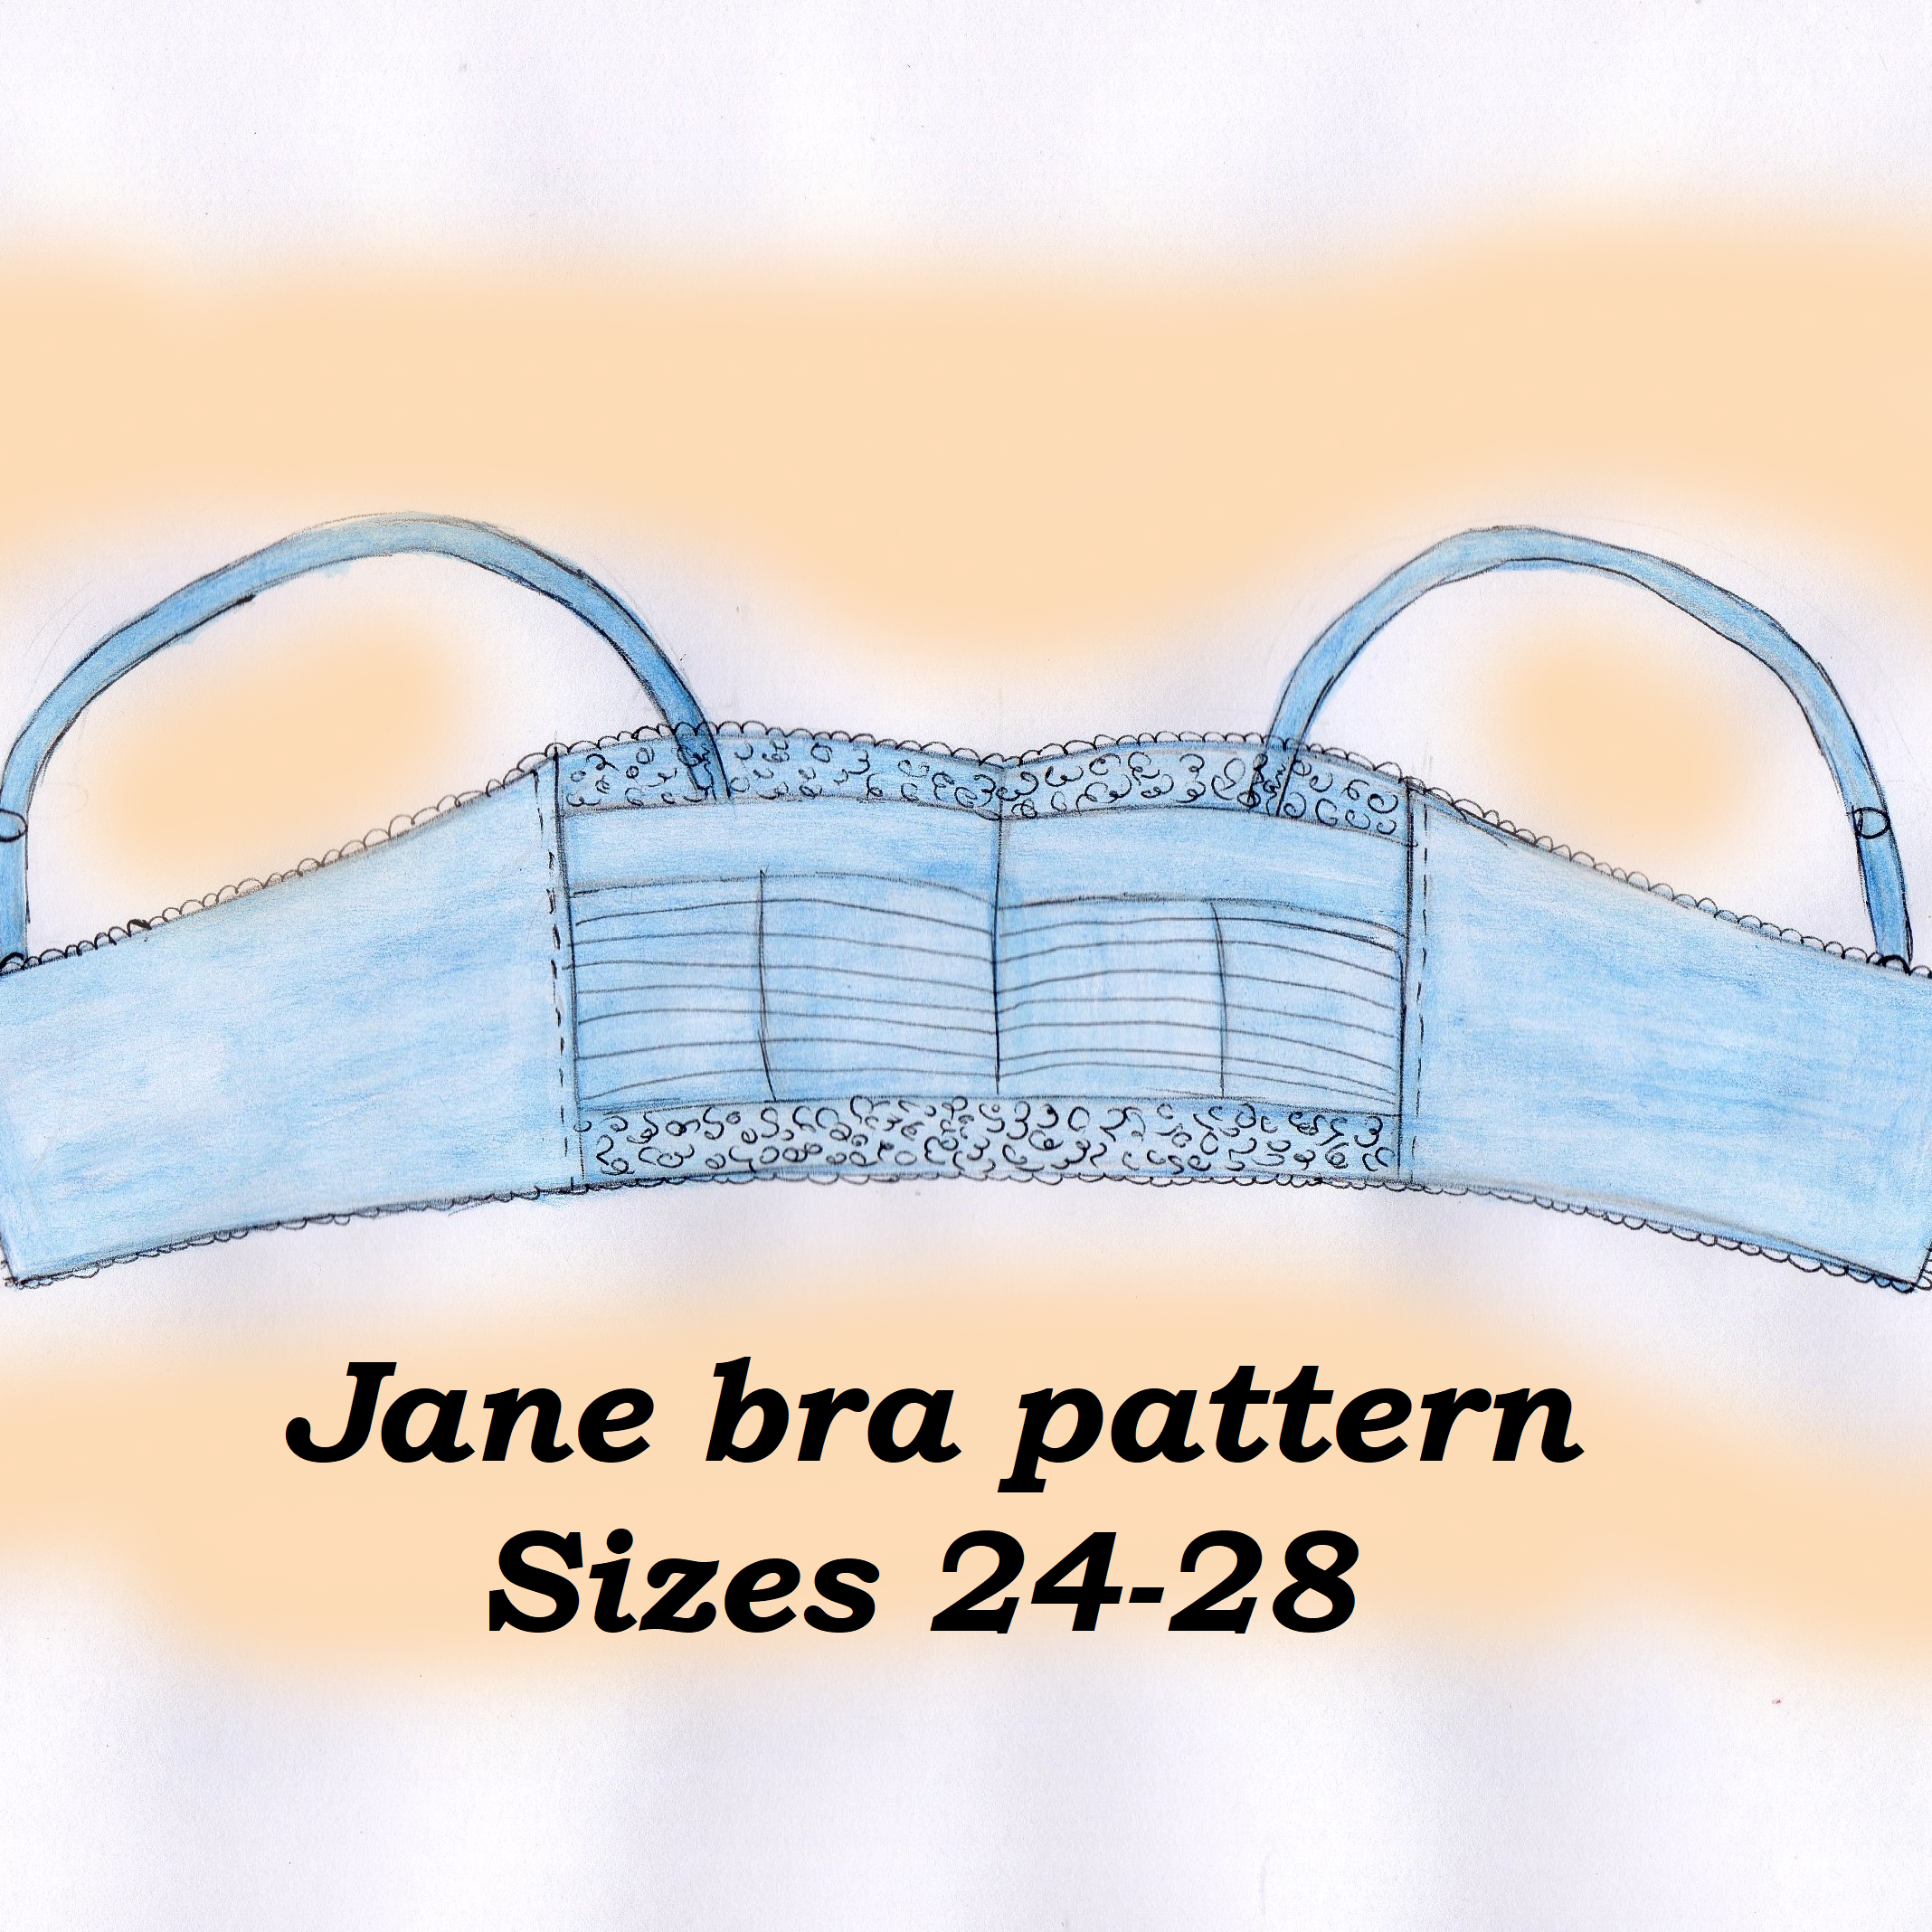 Stretch Picot Bralette Sewing Pattern PDF 